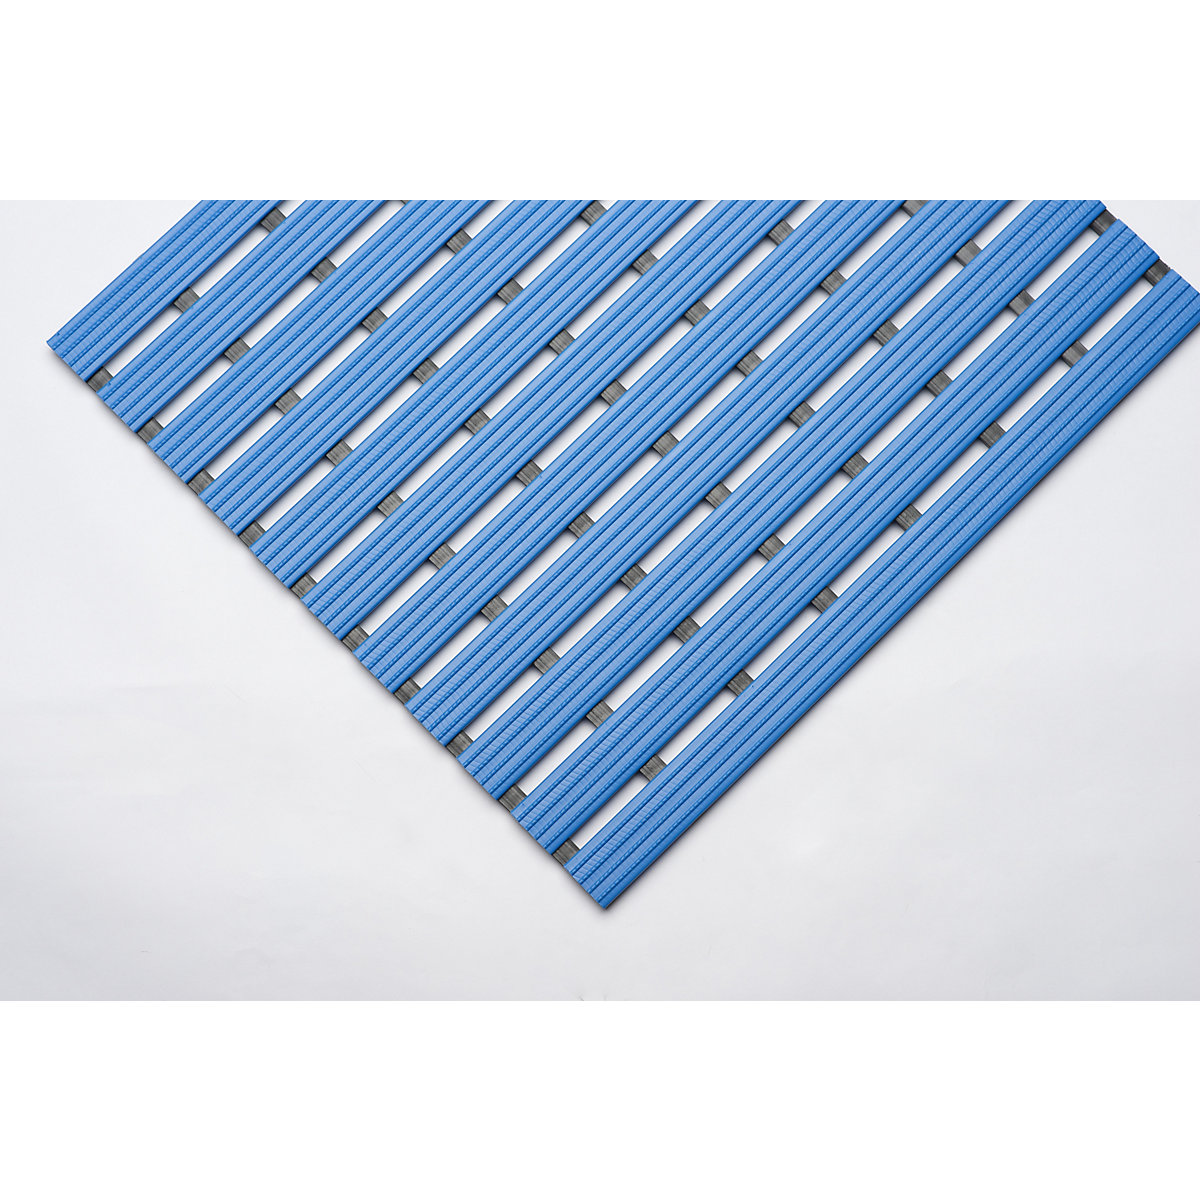 PVC profilová rohožka, na bežný m, pojazdná plocha z tvrdého PVC, protišmyková, šírka 800 mm, modrá